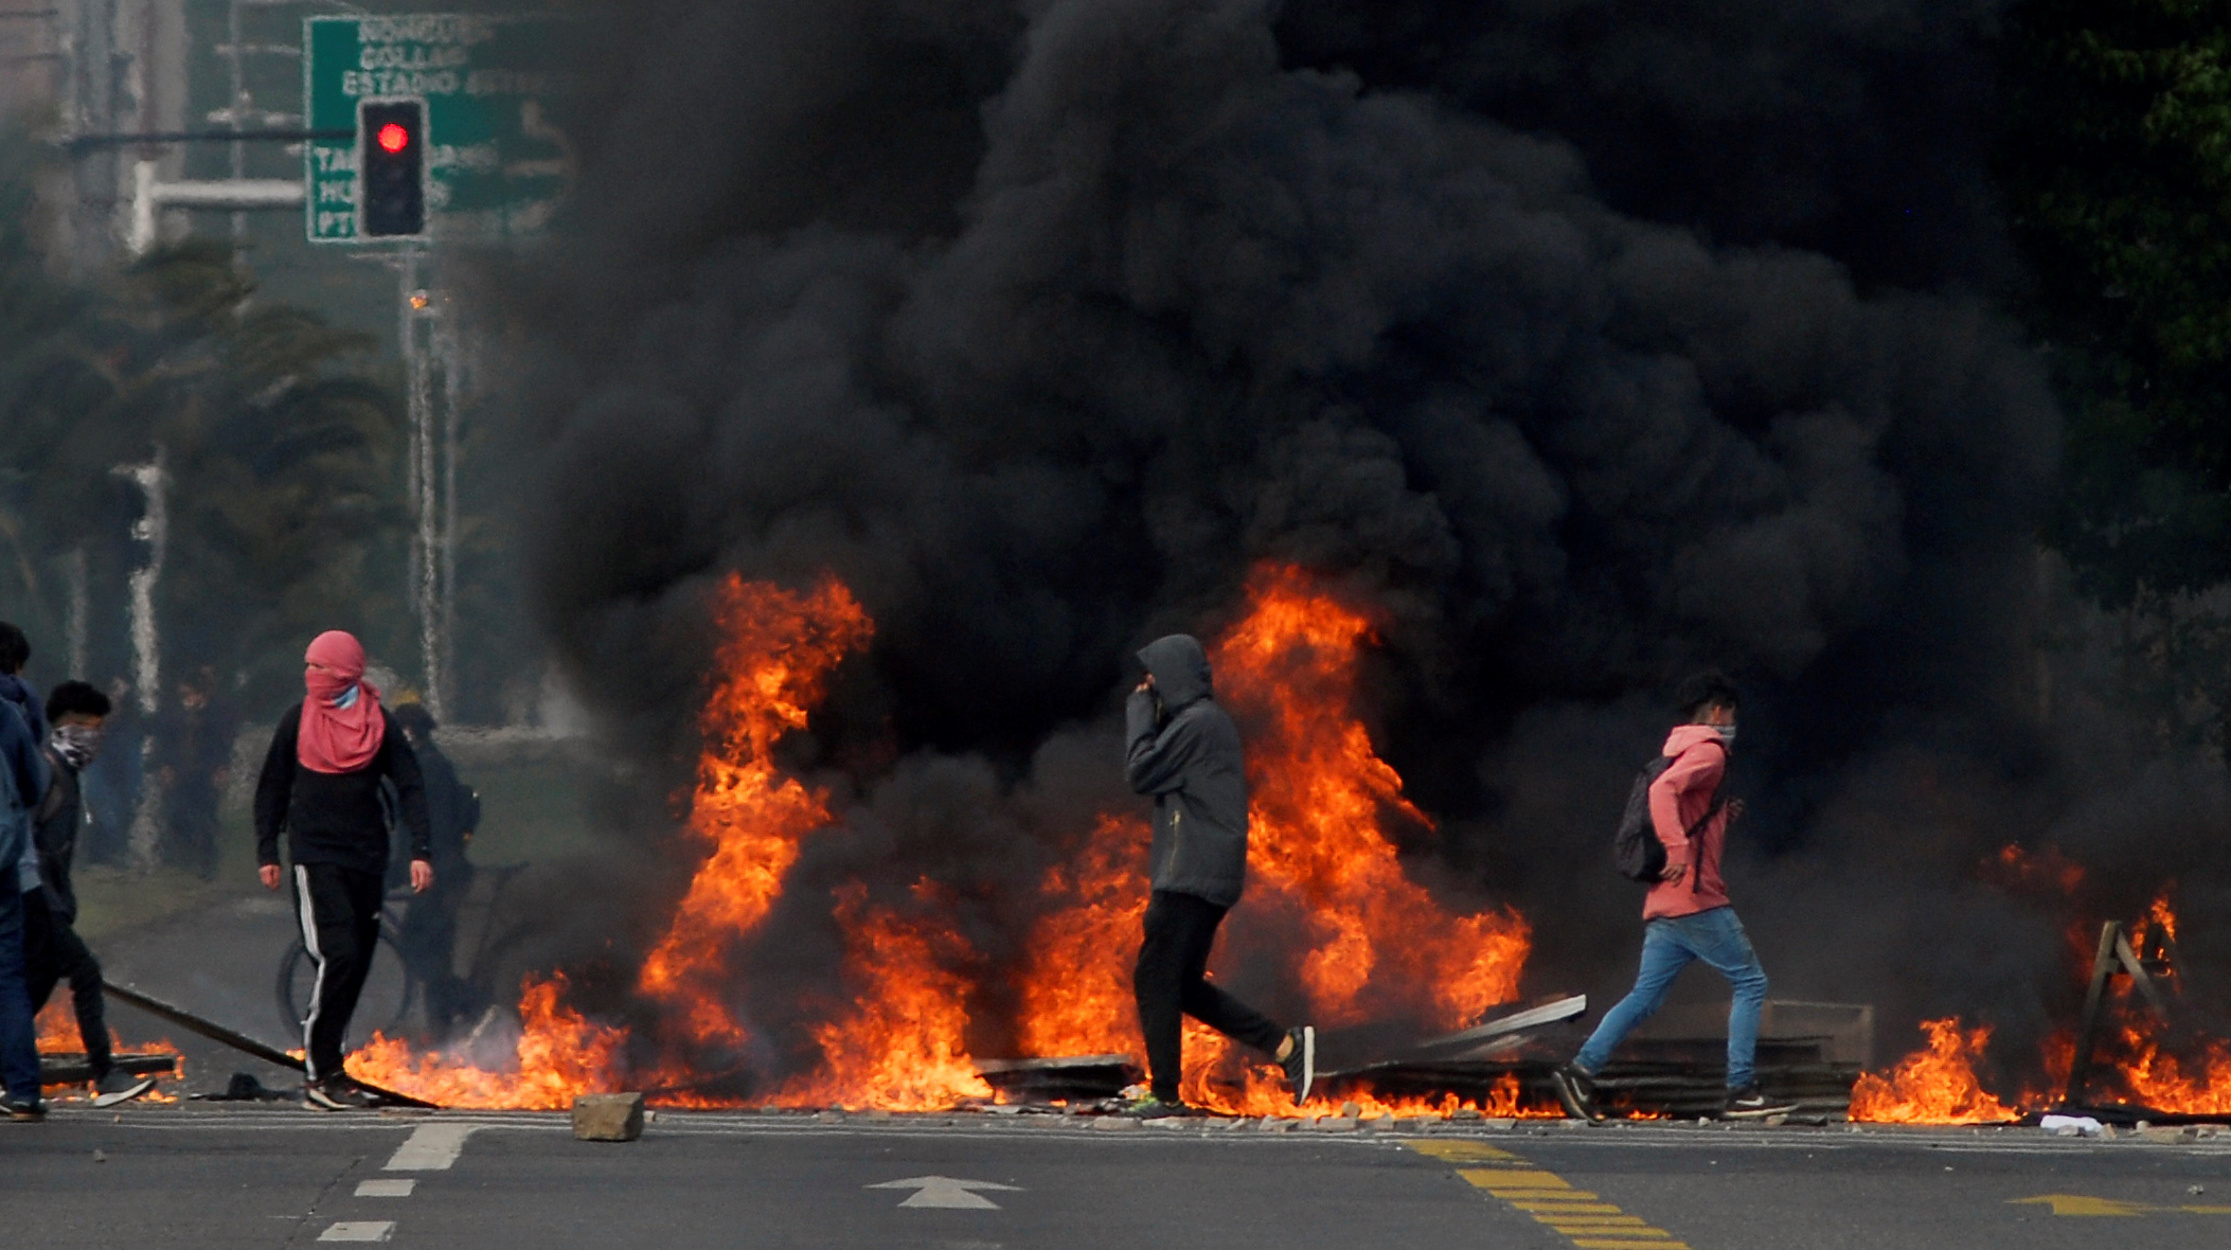 Χιλή: Μαζικές διαδηλώσεις και βίαιες συγκρούσεις – Κάηκαν 5 άνθρωποι μέσα σε εργοστάσιο! video